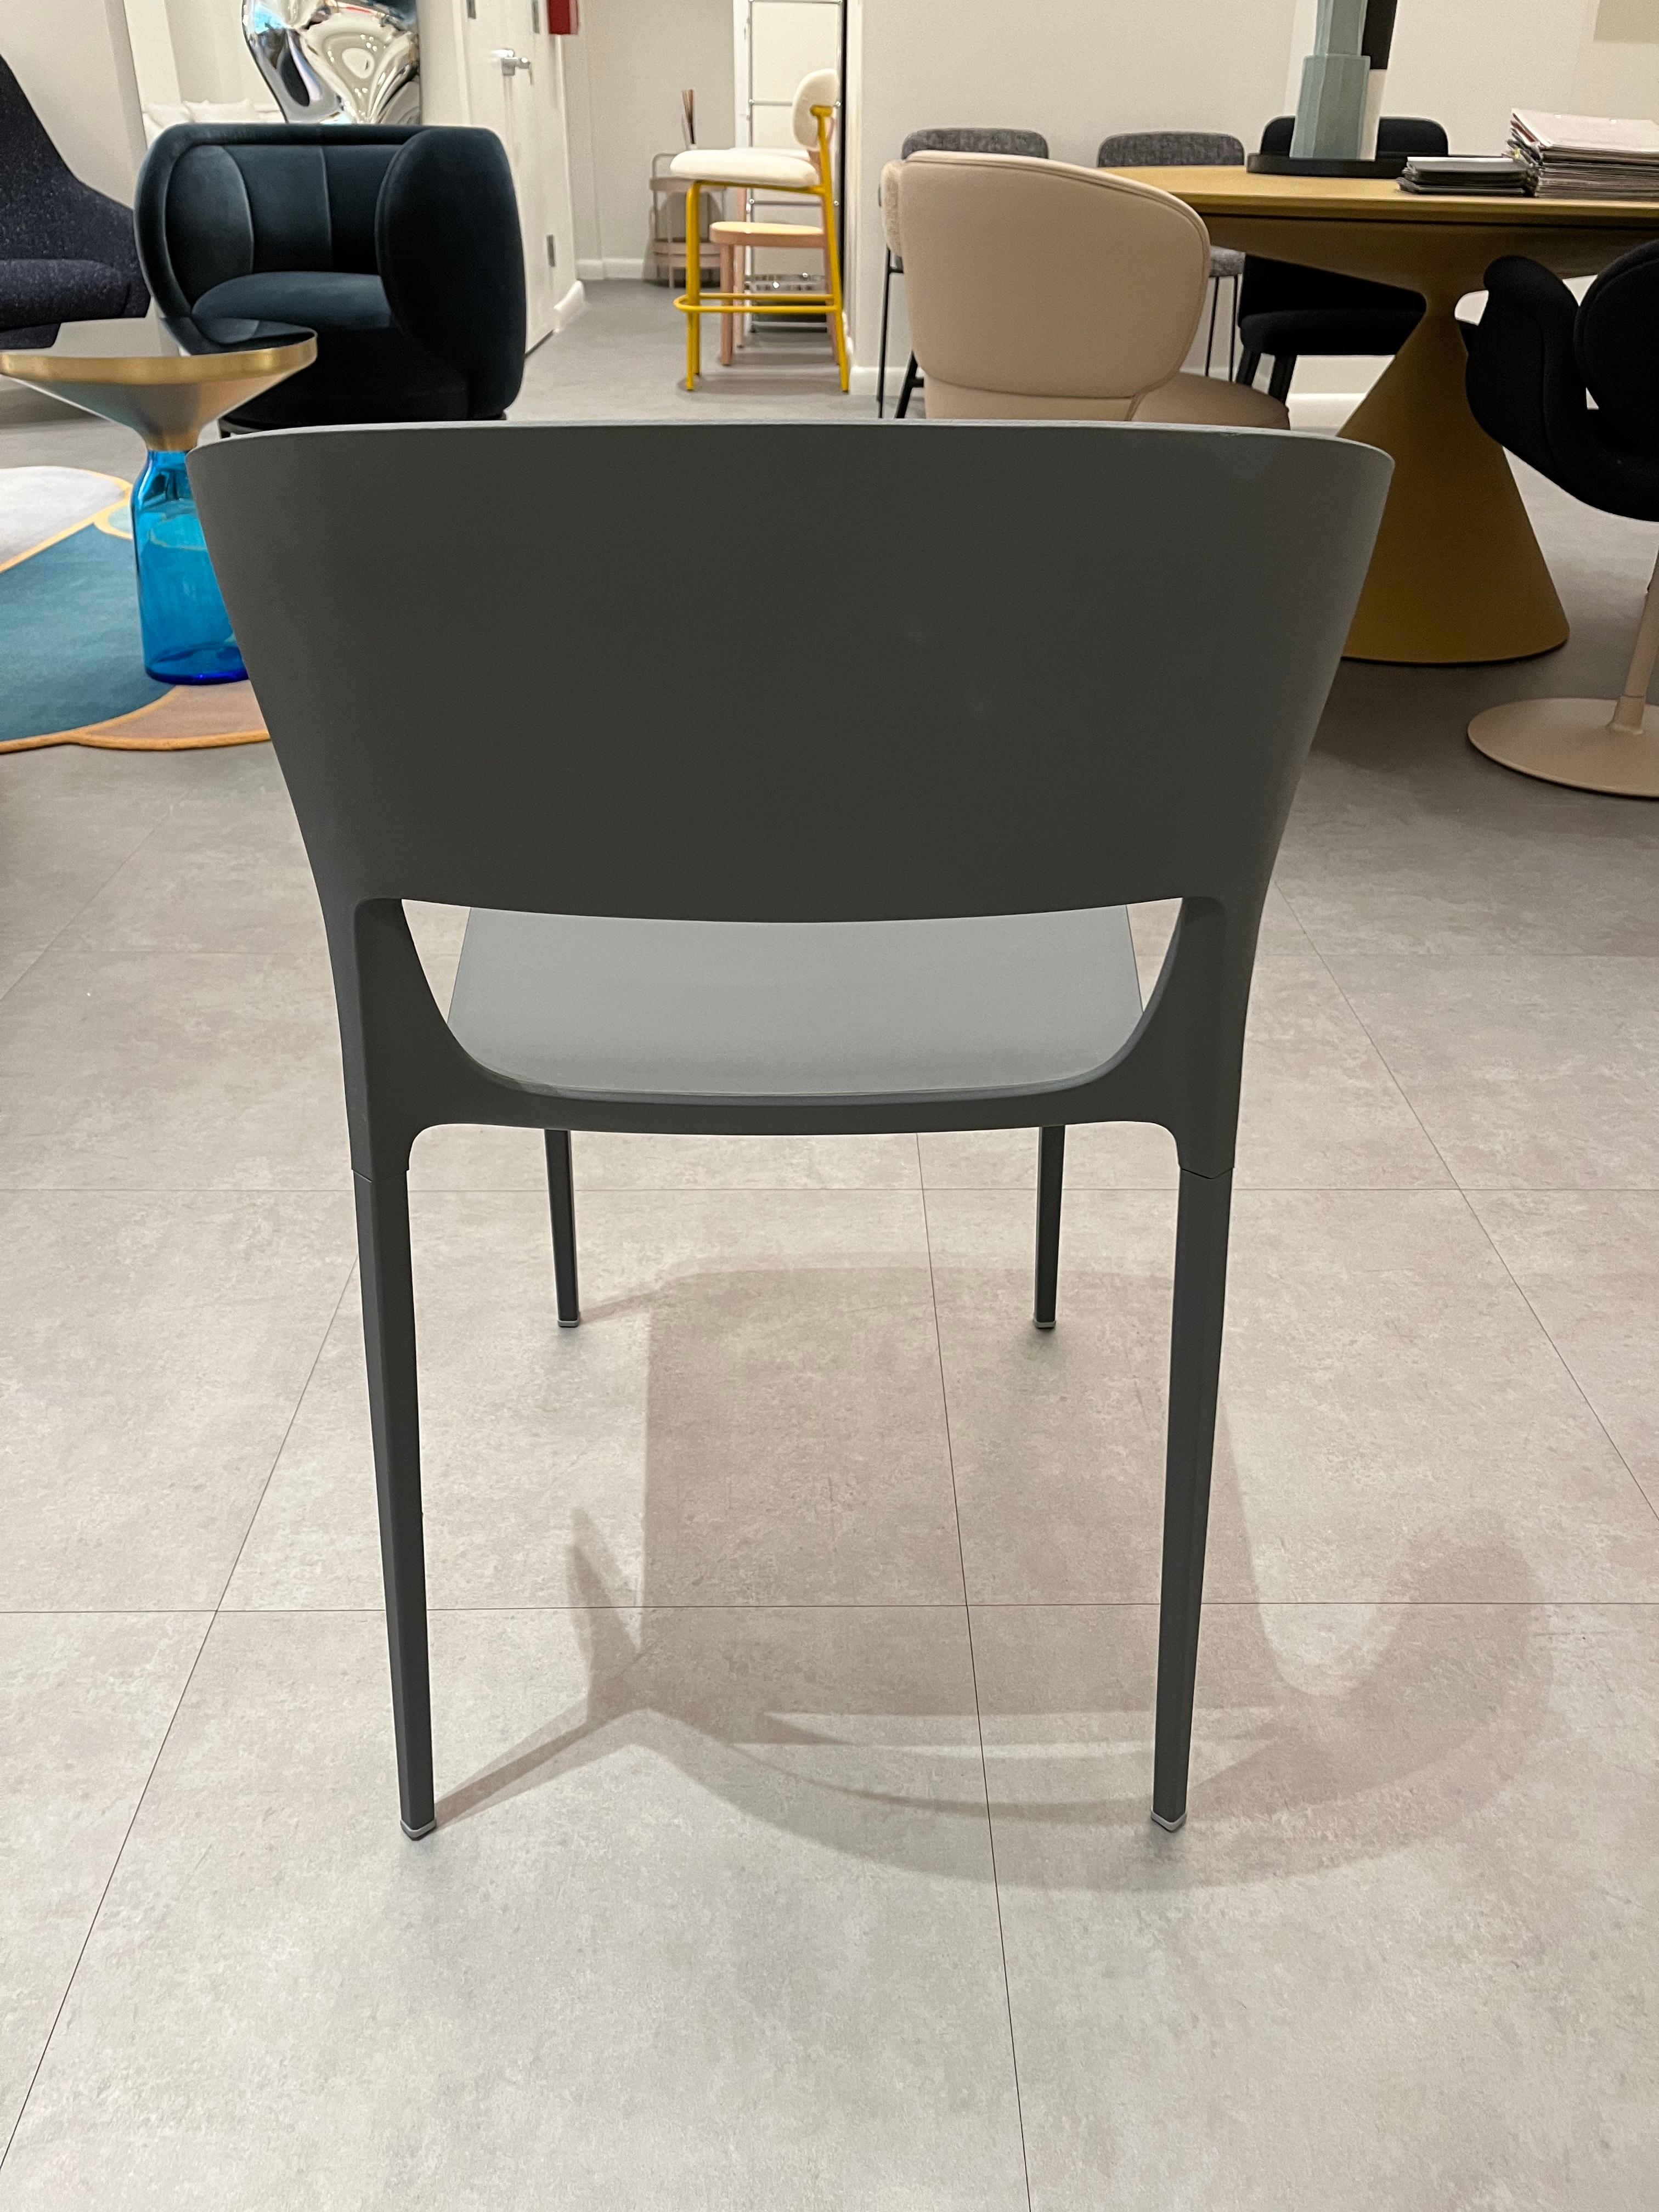 Koki
Pocci + Dondoli - 2015
MATERIAL: Integral-Polyurethan
Mit der Koki-Stuhlserie hält die Objektwelt Einzug in den häuslichen Bereich  mit einem modernen, frischen Design. Ein perfektes Gleichgewicht von Form, Funktion und Innovation, das aus